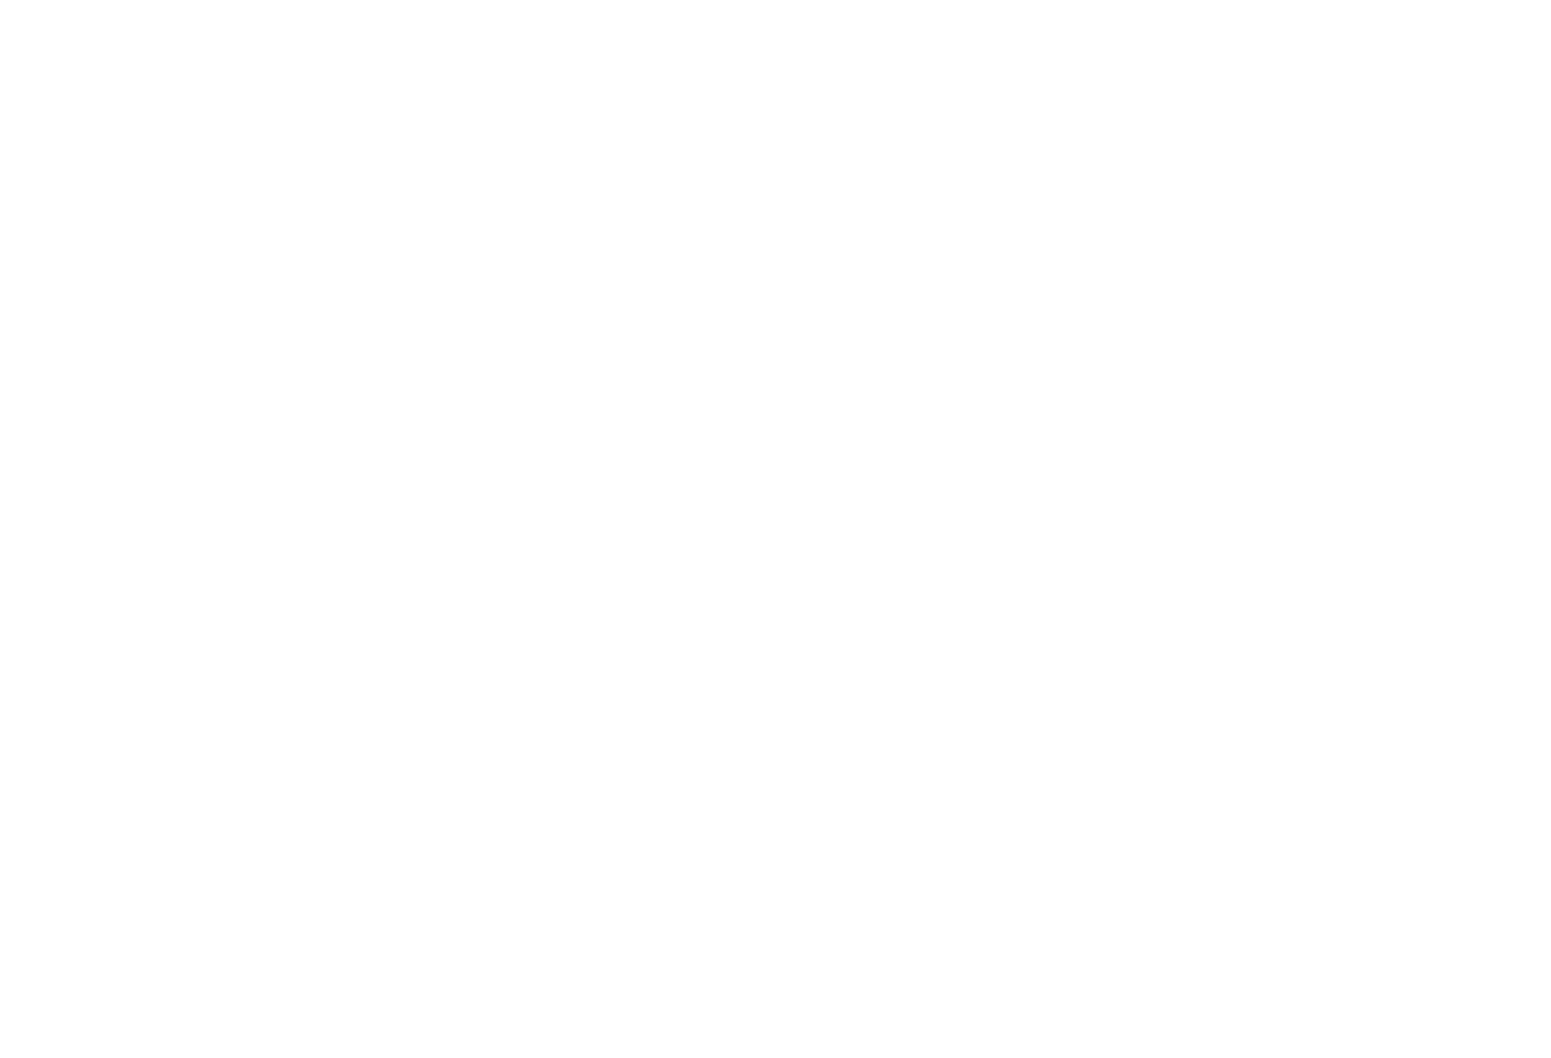 Franchise Group logo large for dark backgrounds (transparent PNG)